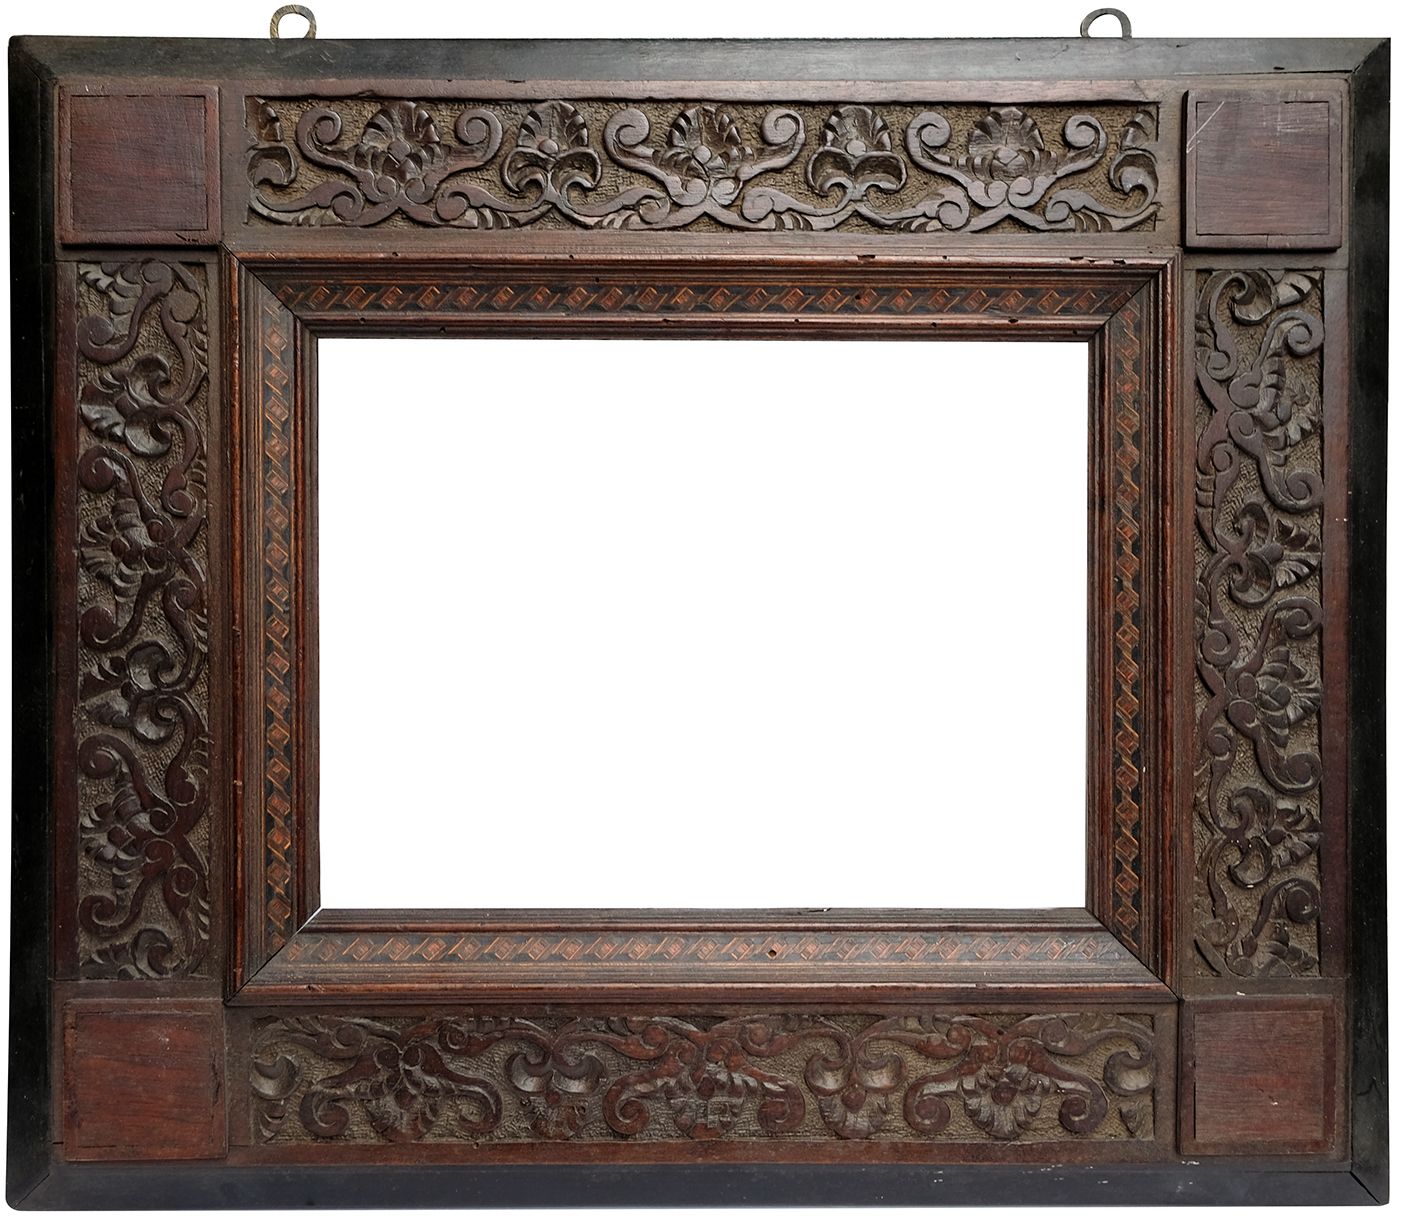 Cadre style Orientaliste, bois sculpté -30 x 23,1 cm- REF 1137